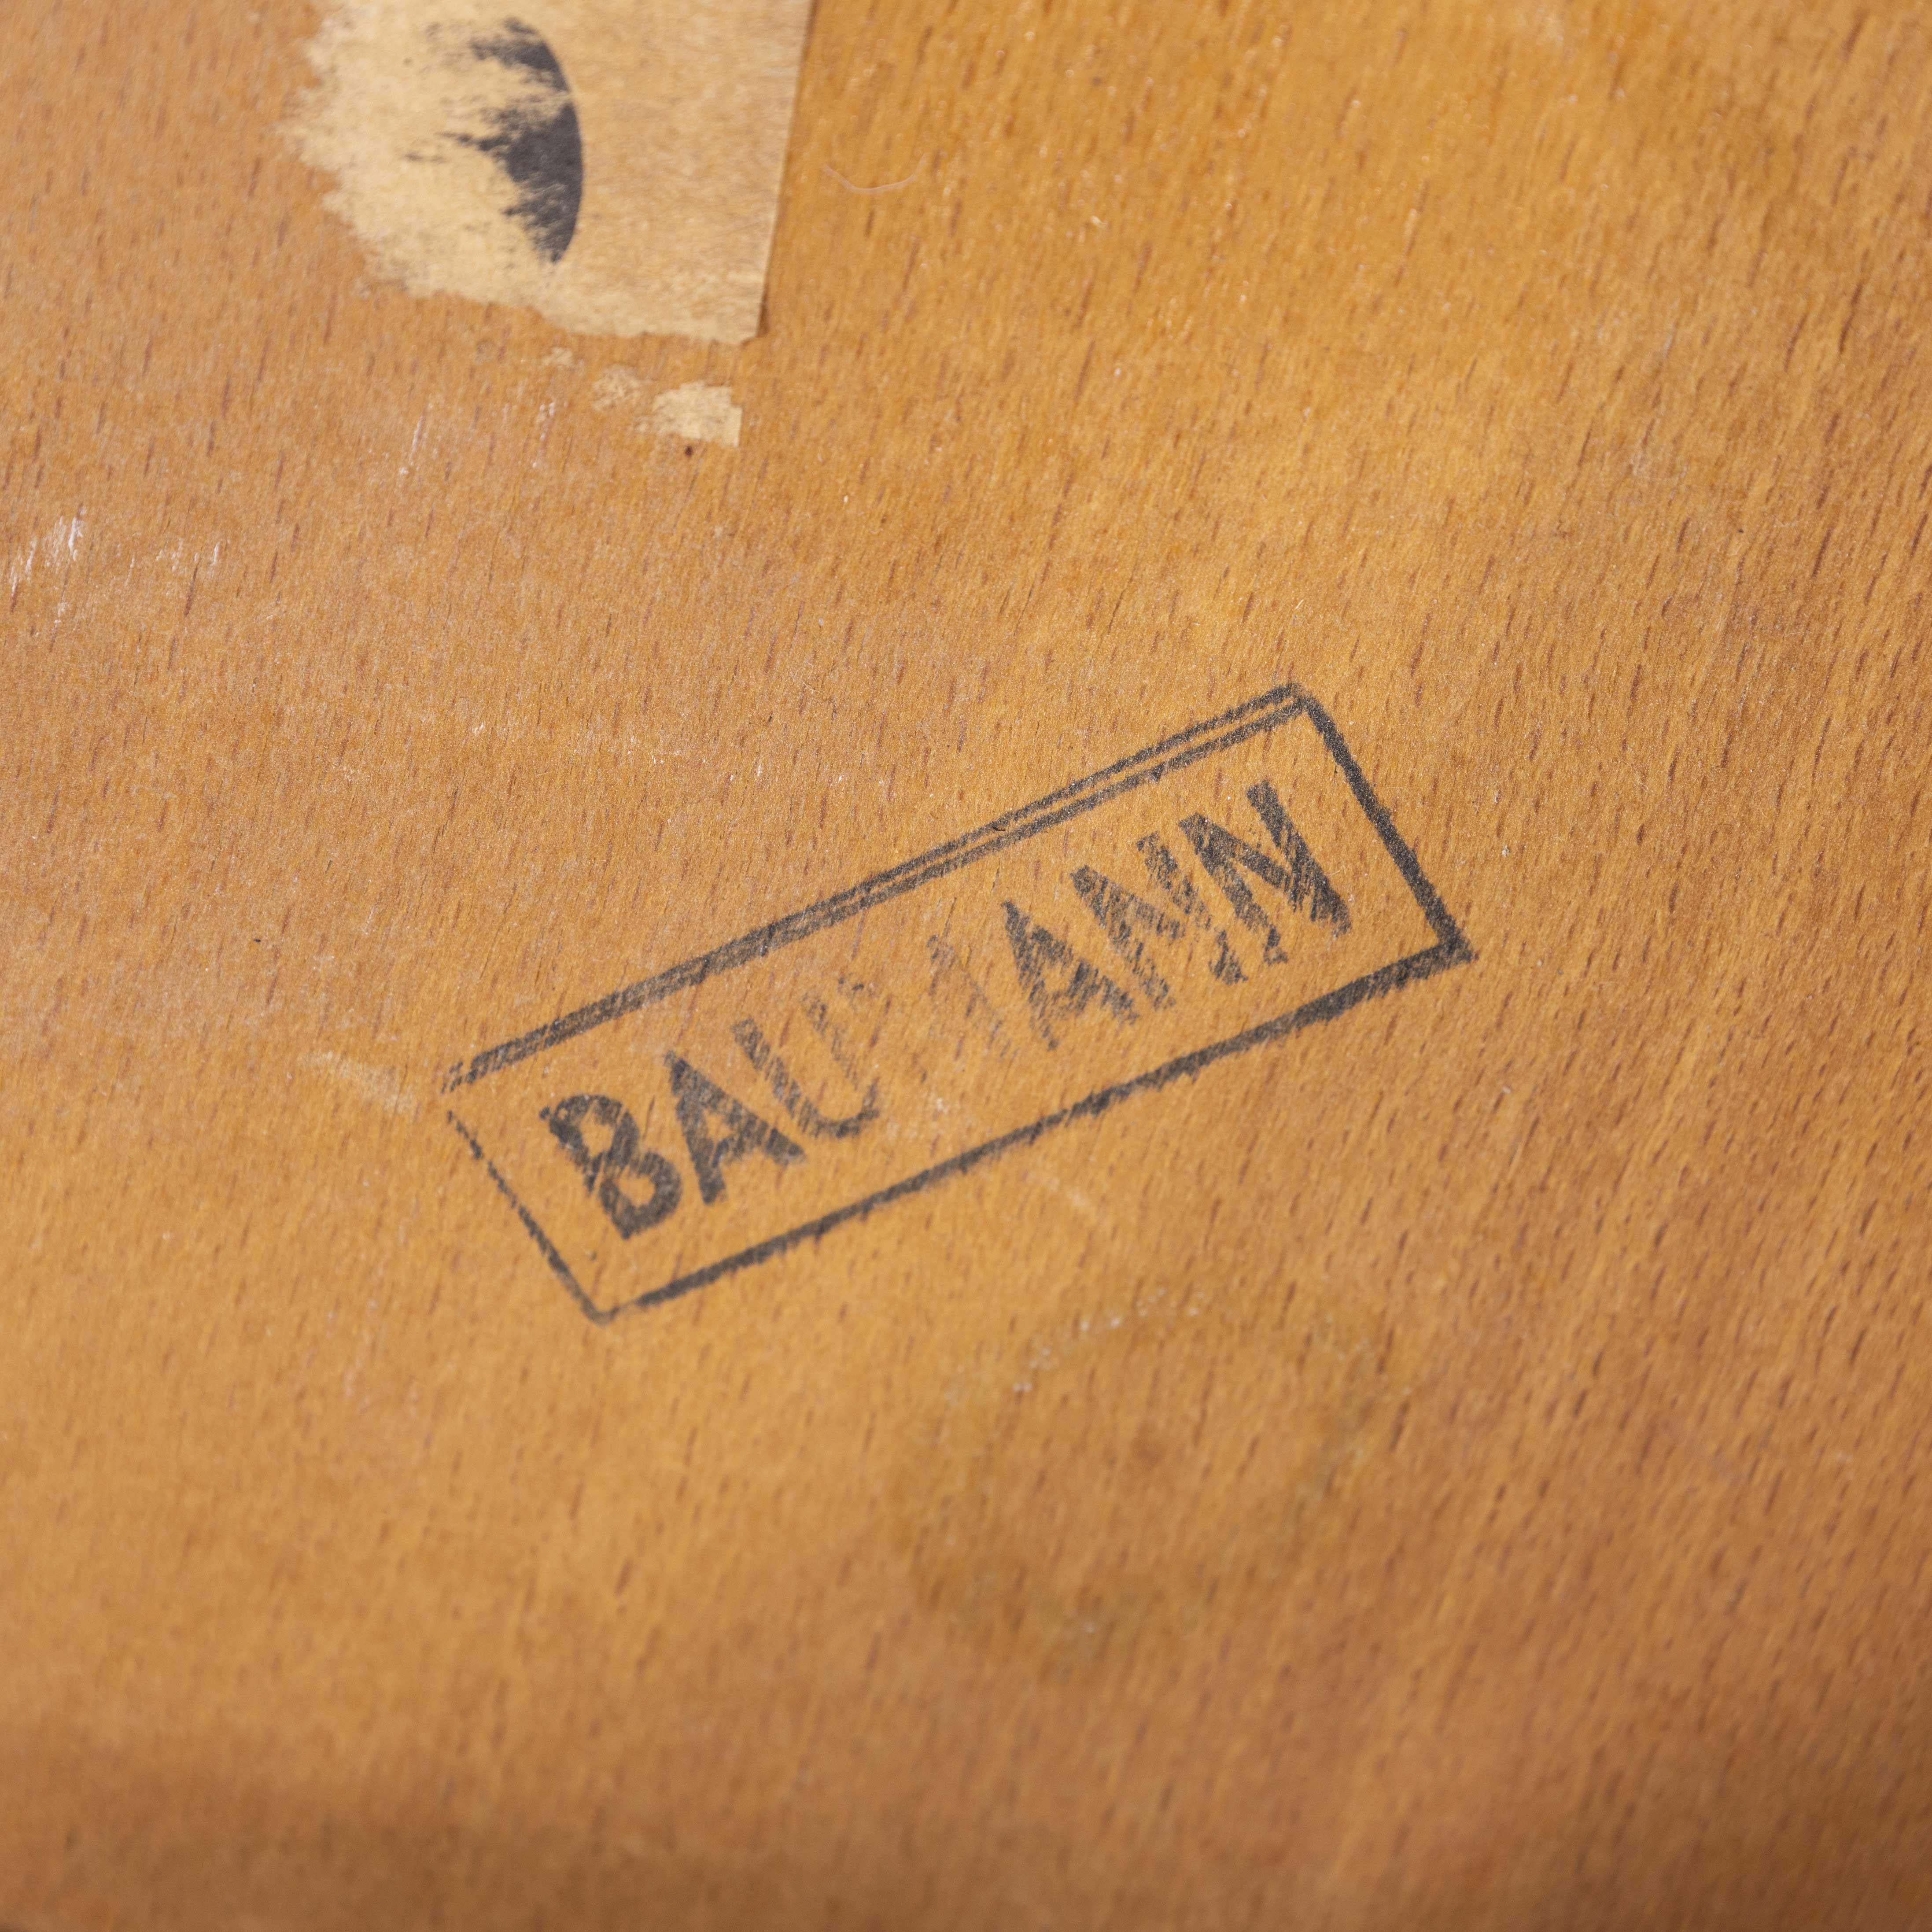 1950er Jahre Französisch baumann blonde Buche Bugholz Esszimmerstühle - Satz von vierundzwanzig

1950er Jahre Französisch Baumann blonde Buche Bugholz Esszimmerstühle - Satz von vierundzwanzig (Modell 1403). Baumann ist ein etwas unauffälliger